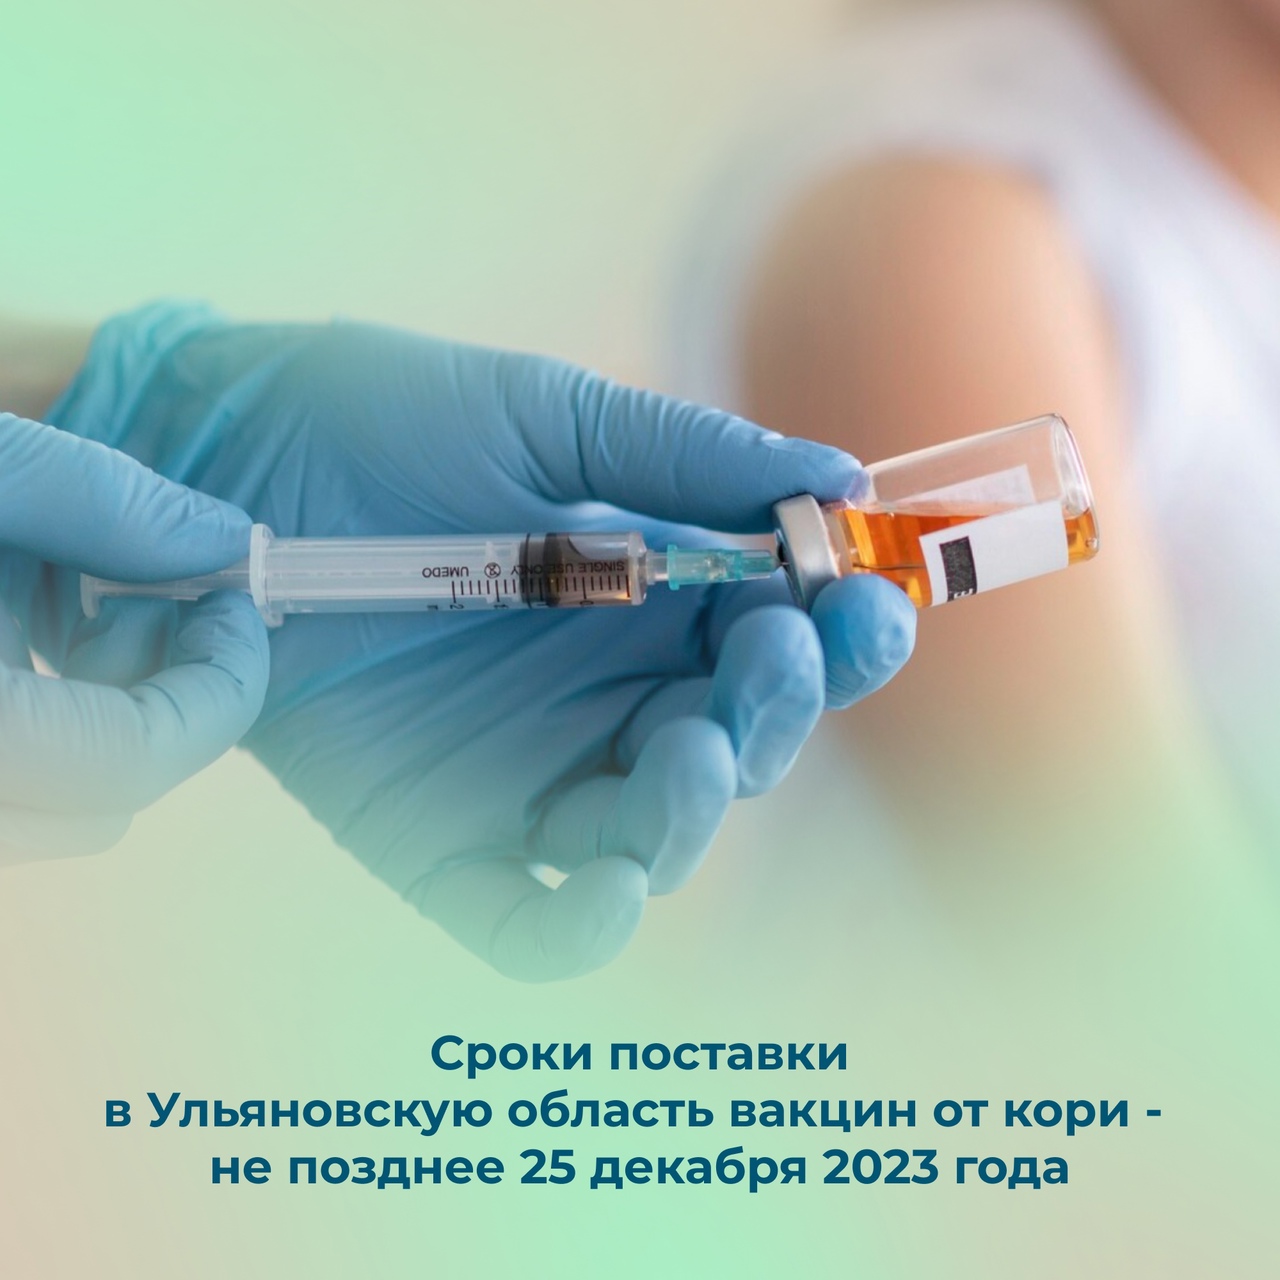 Димитровград обеспечат вакциной от кори.